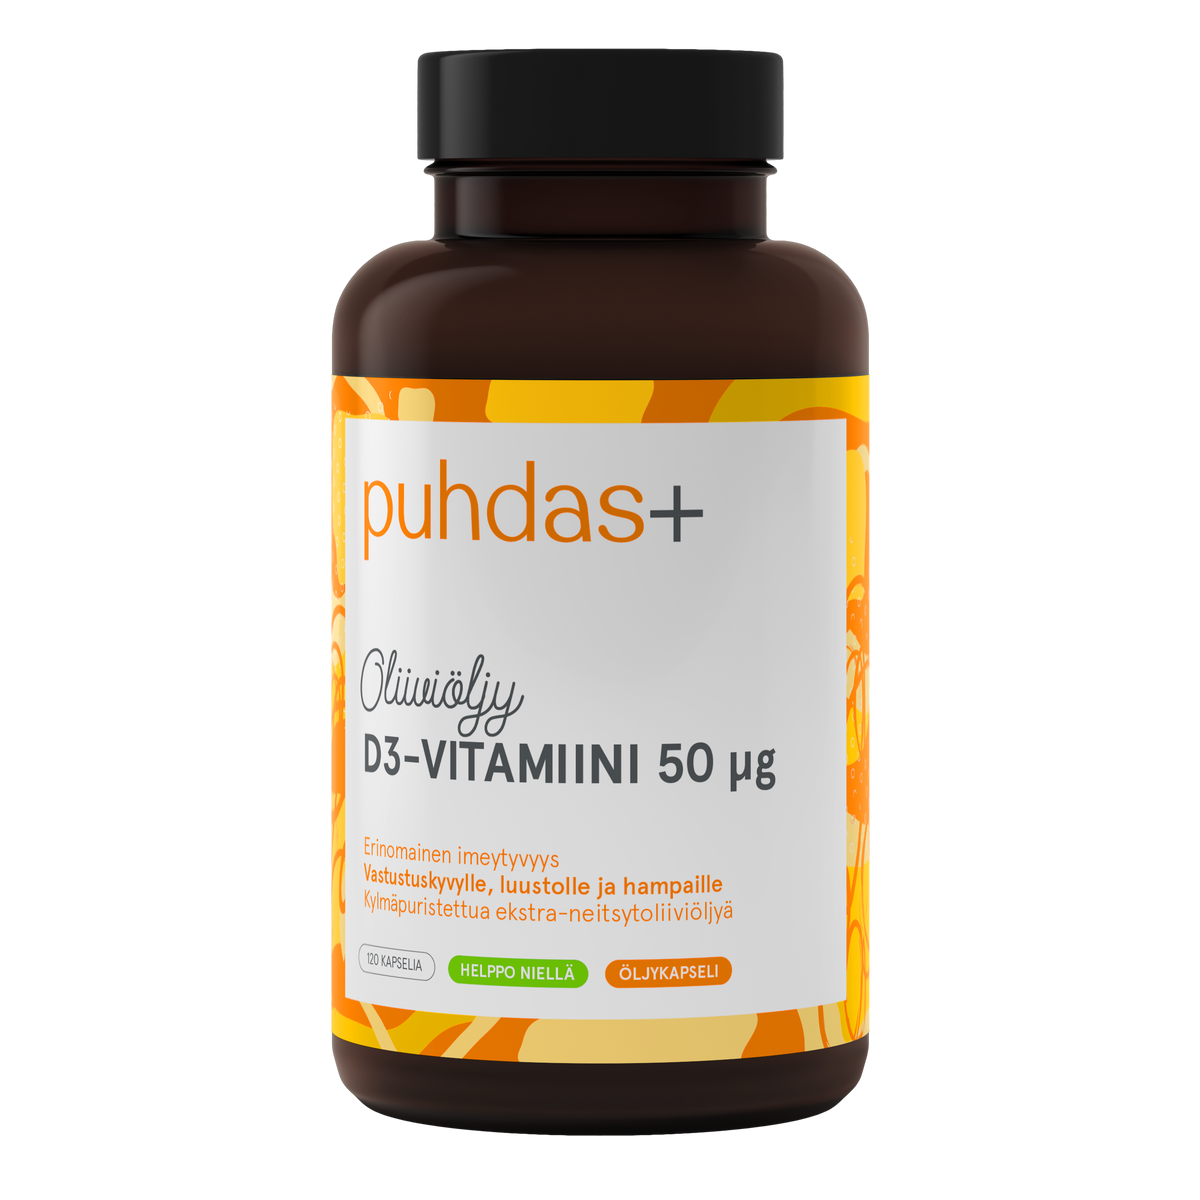 Puhdas+ D3-vitamiini Oliiviöljy 50 µg 120 kaps. - Päiväys 06/2024